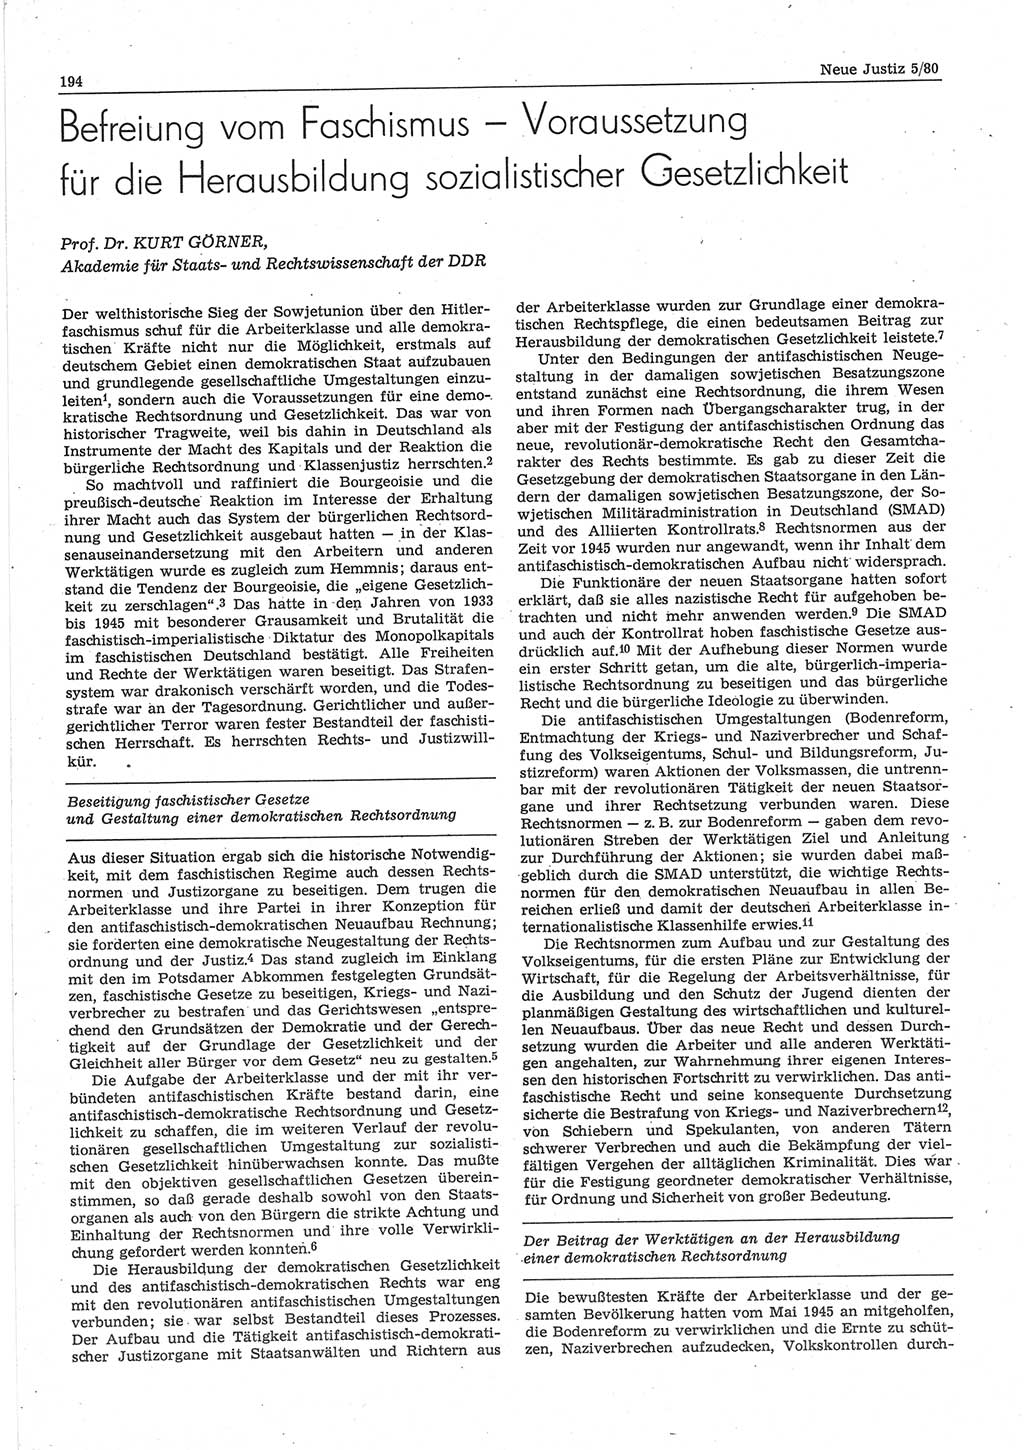 Neue Justiz (NJ), Zeitschrift für sozialistisches Recht und Gesetzlichkeit [Deutsche Demokratische Republik (DDR)], 34. Jahrgang 1980, Seite 194 (NJ DDR 1980, S. 194)